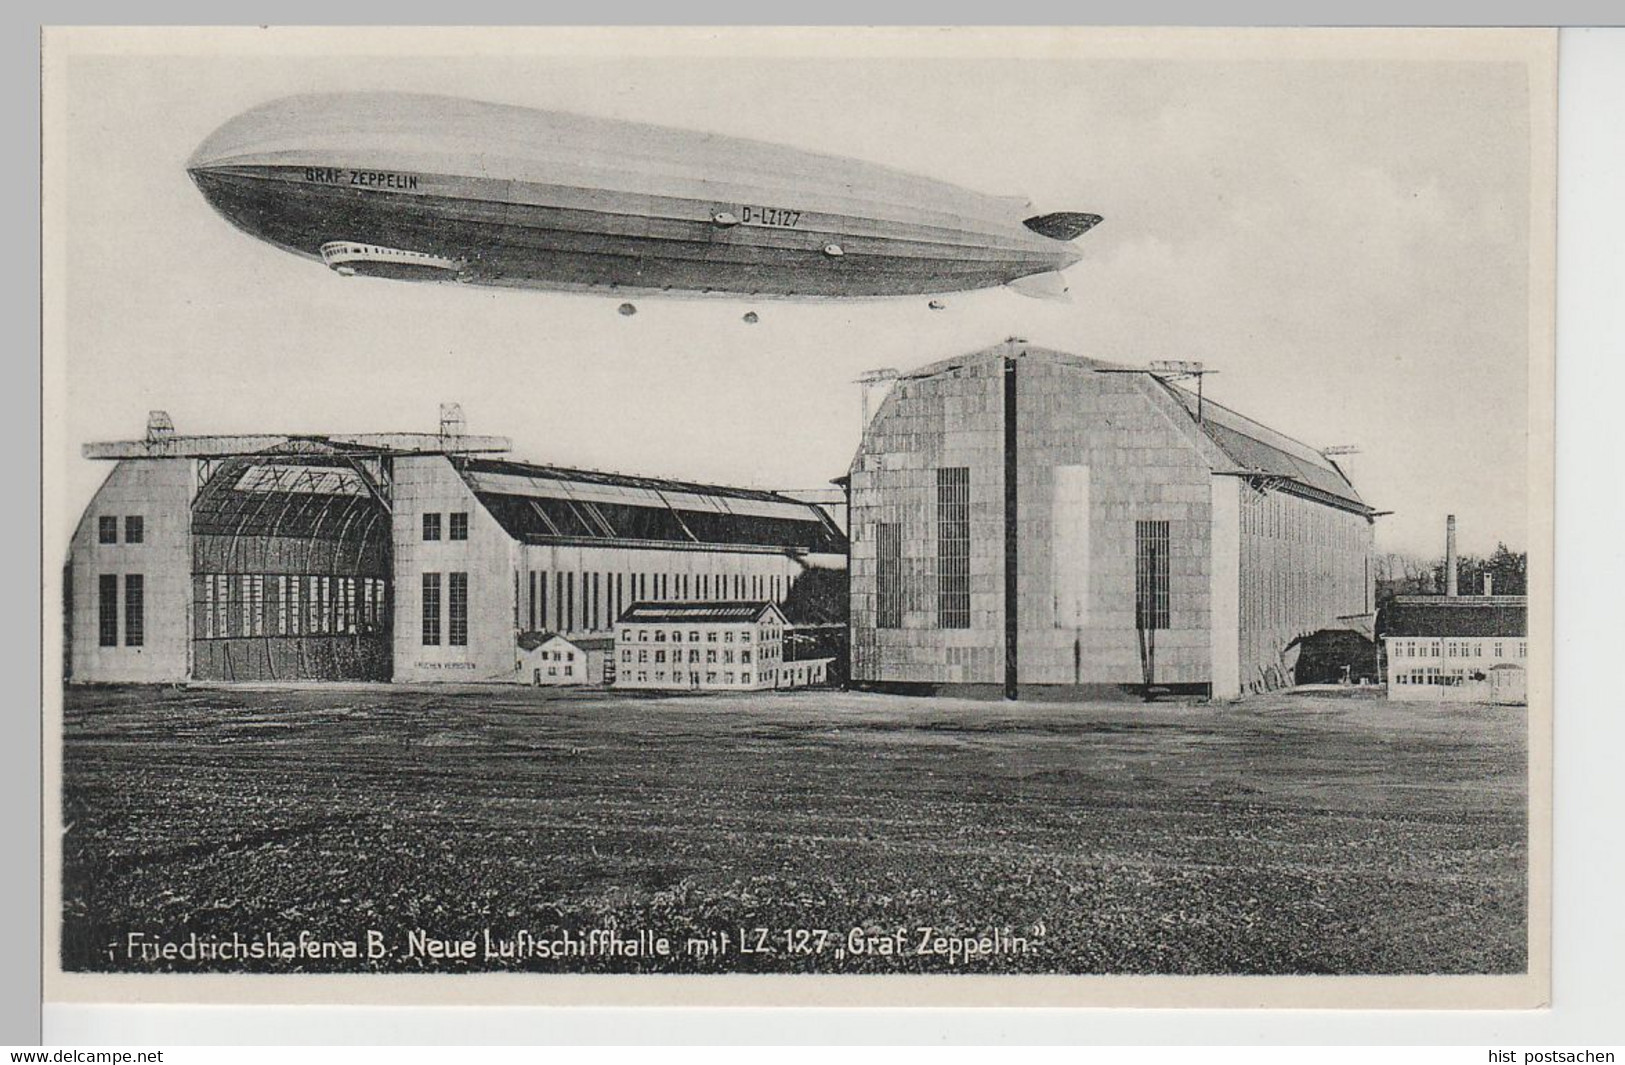 (77755) AK Friedrichshafen, Neue Luftschiffhalle, LZ 127 Graf Zeppelin, V. 1945 - Airships